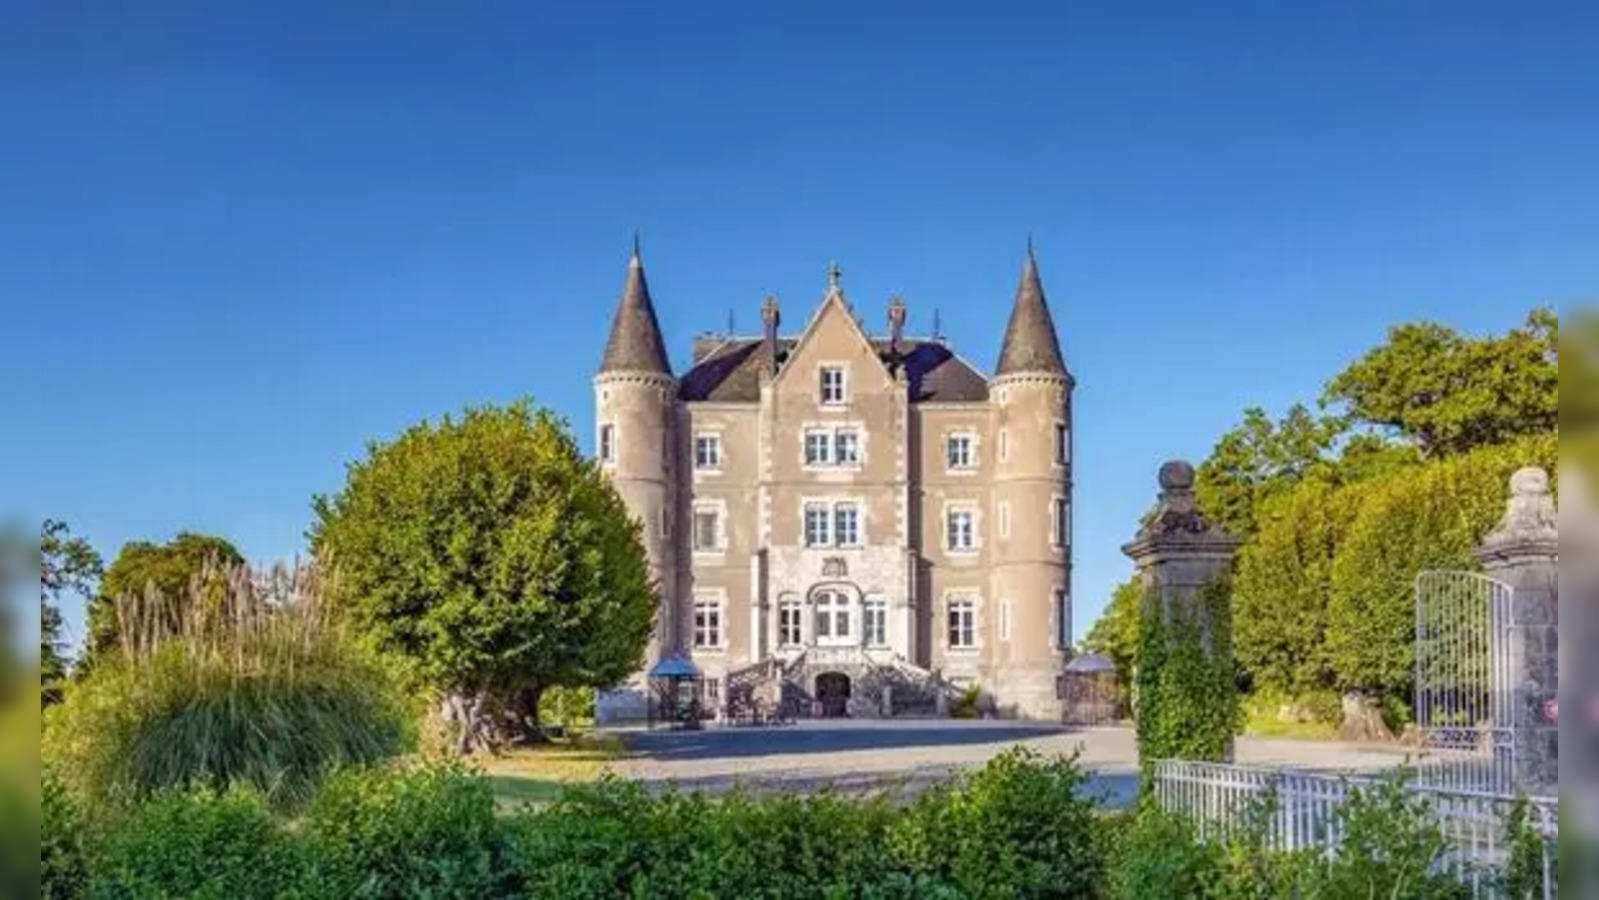 Chateau-De-La-Motte Husson: 'Escape to the Chateau DIY' featured mansion  The Chateau-de-la-Motte Husson on sale: Know price, other details - The  Economic Times